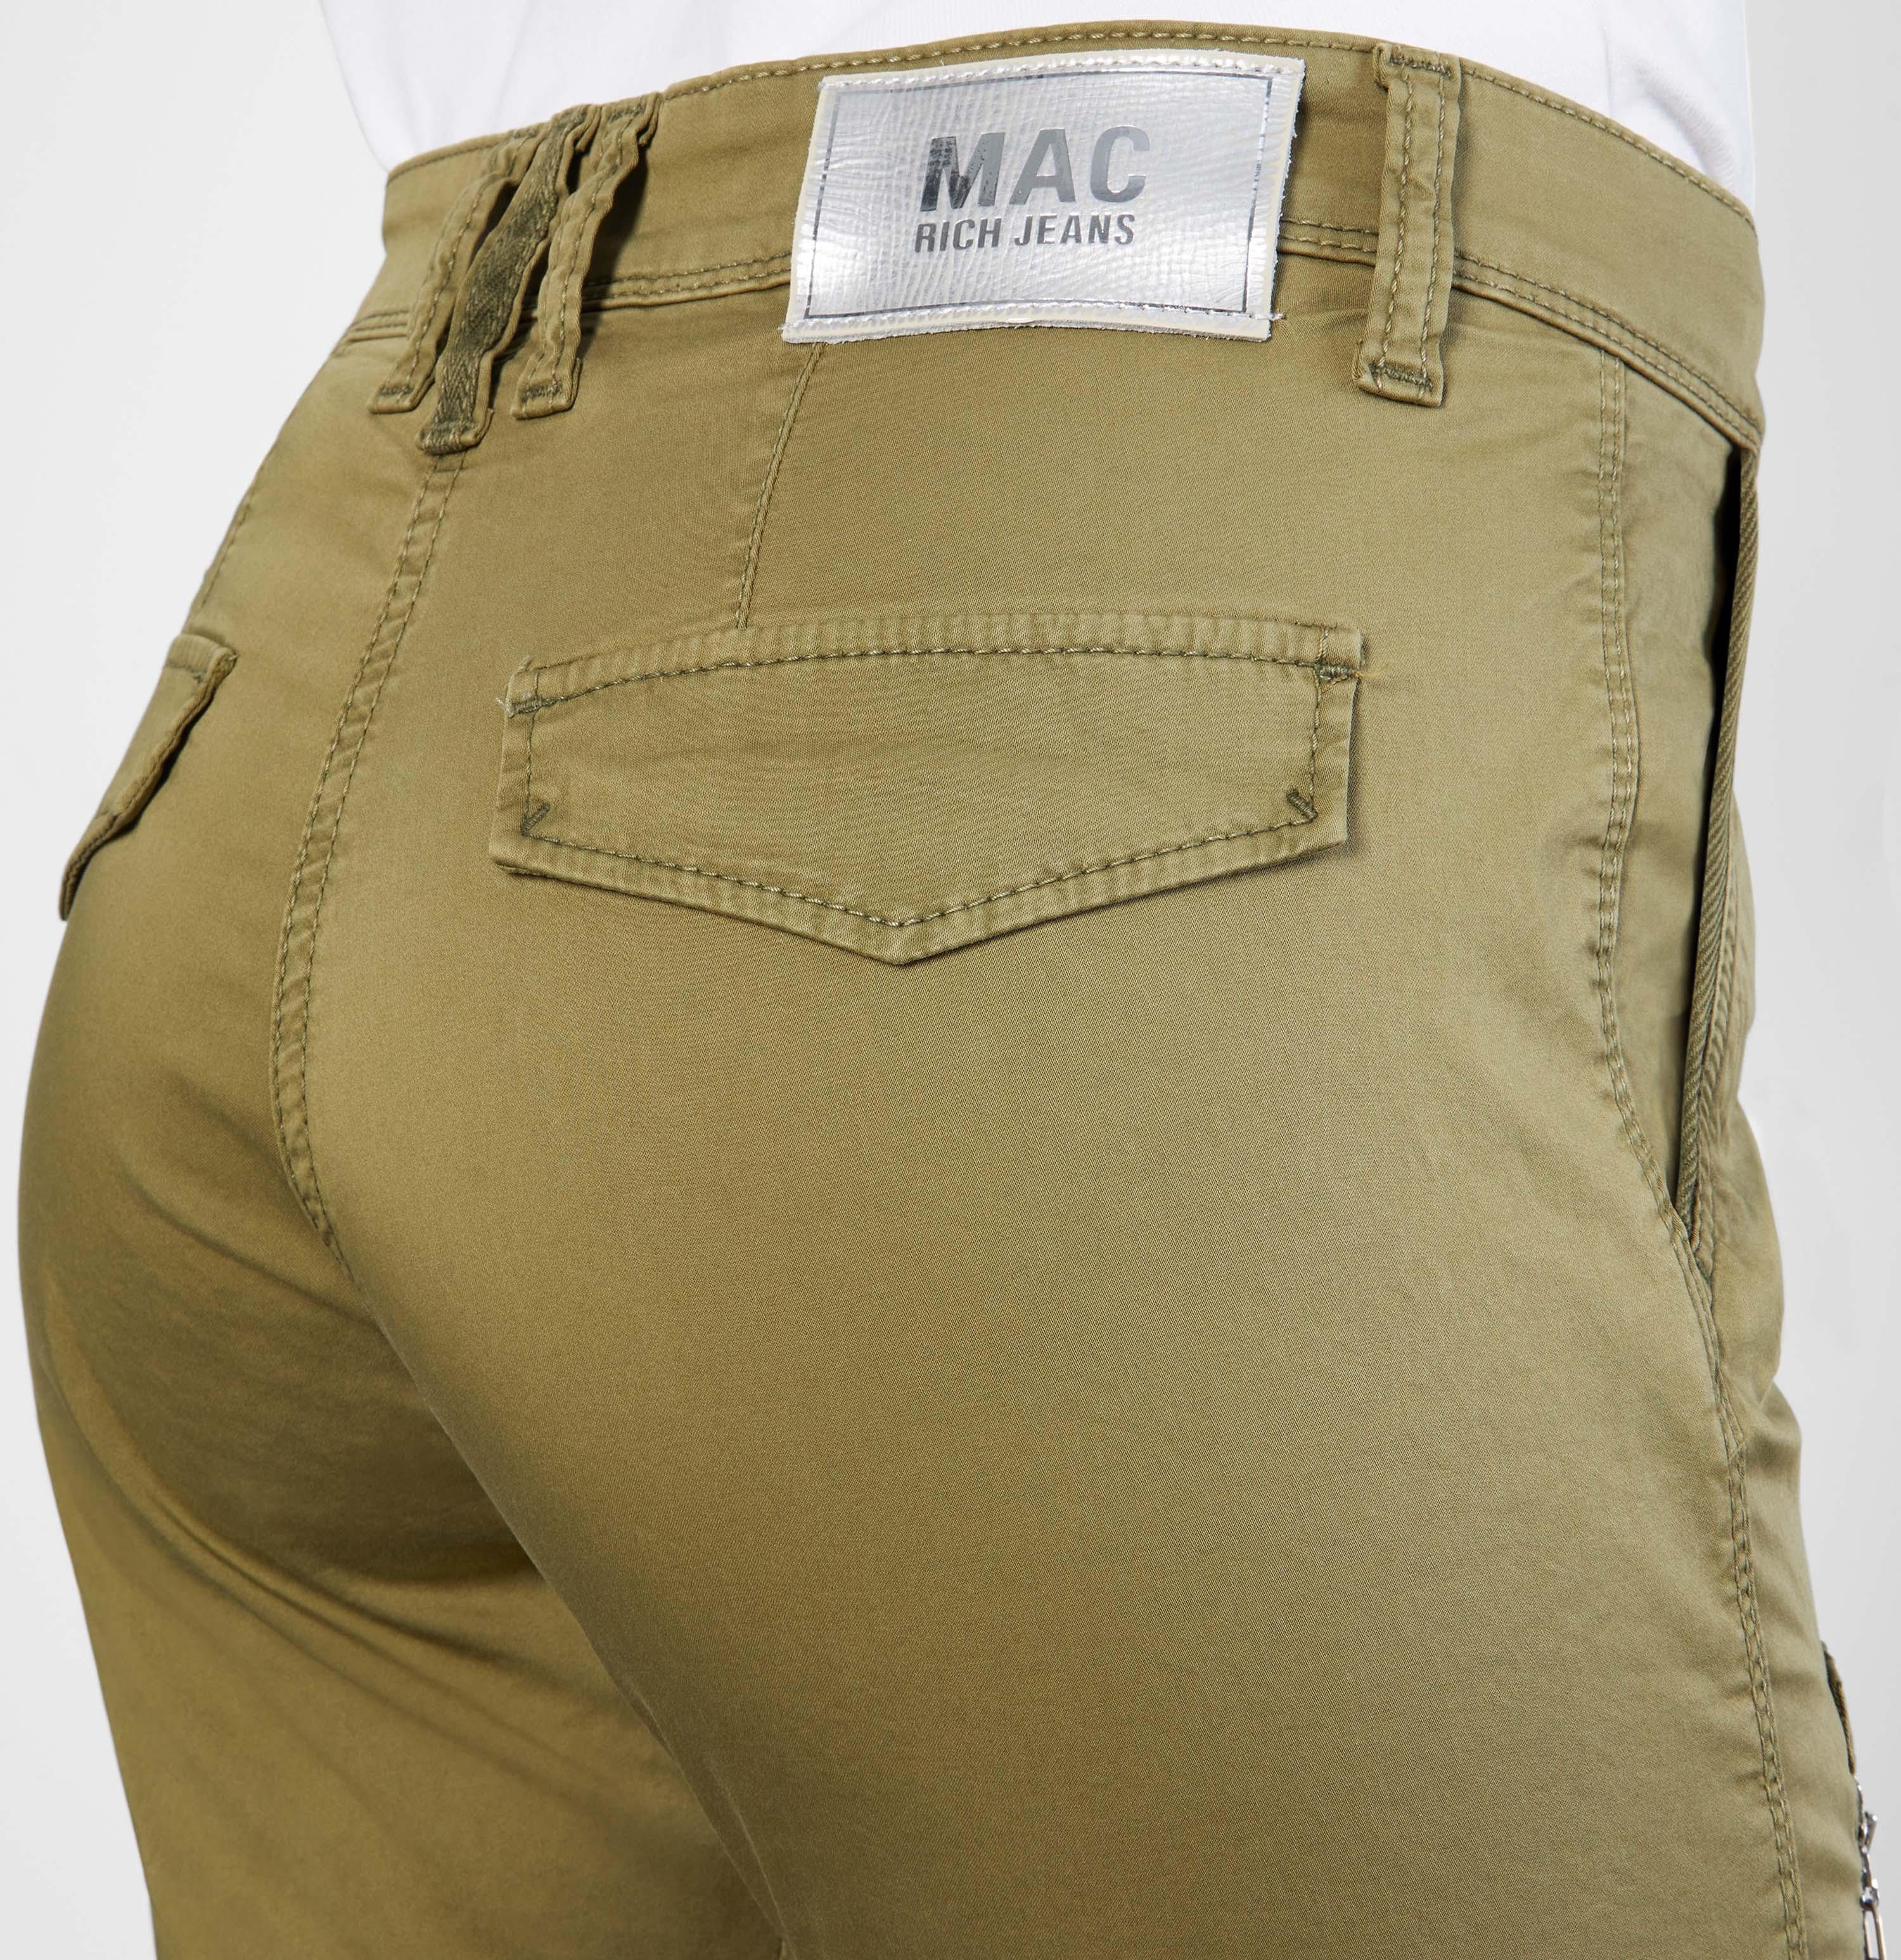 RICH MAC MAC Stretch-Jeans green 2377-00-0430L-351V hunt